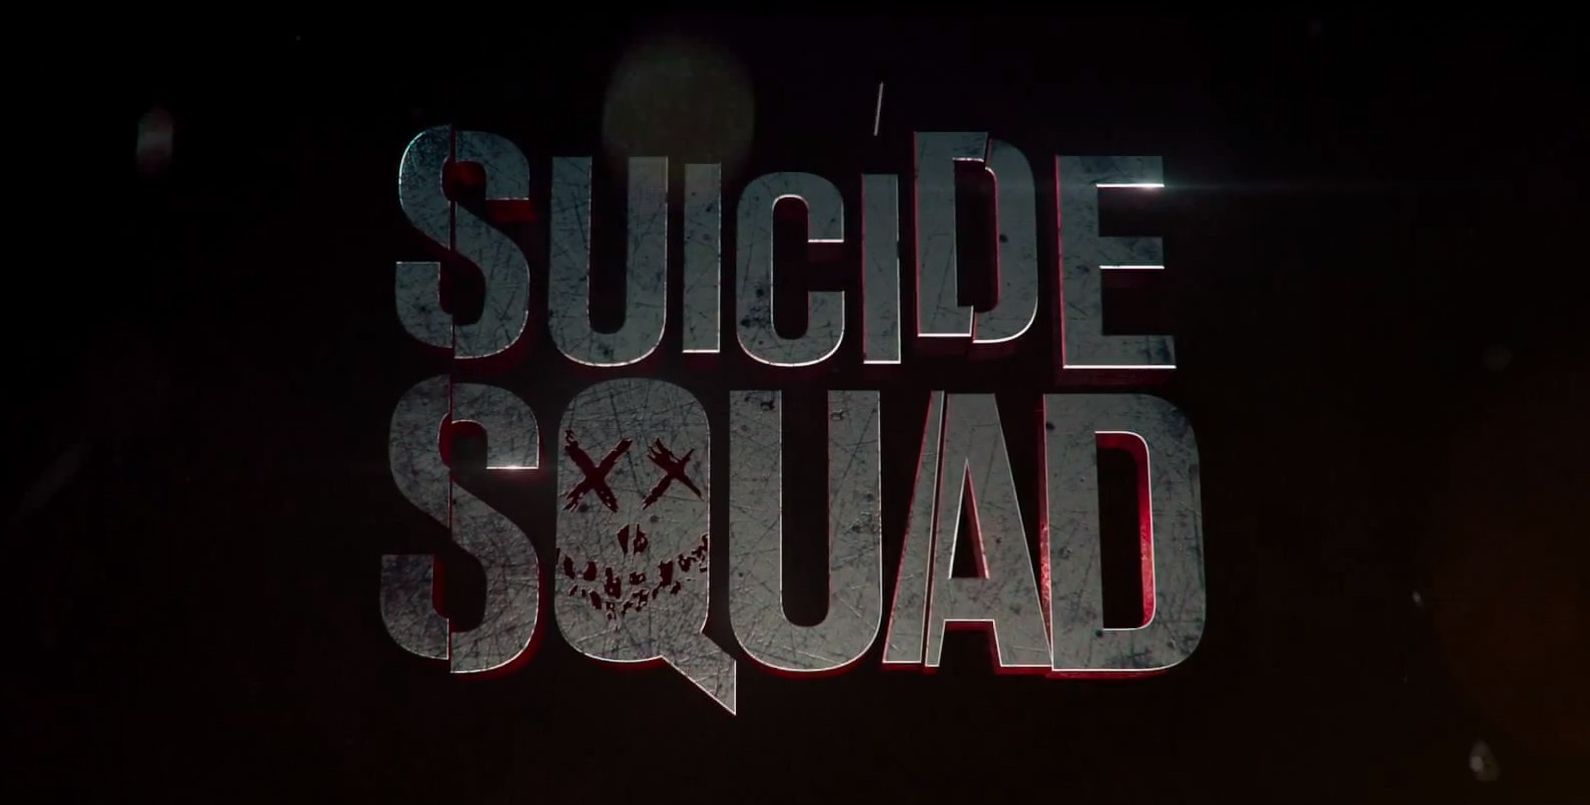 Suicide Squad Logo